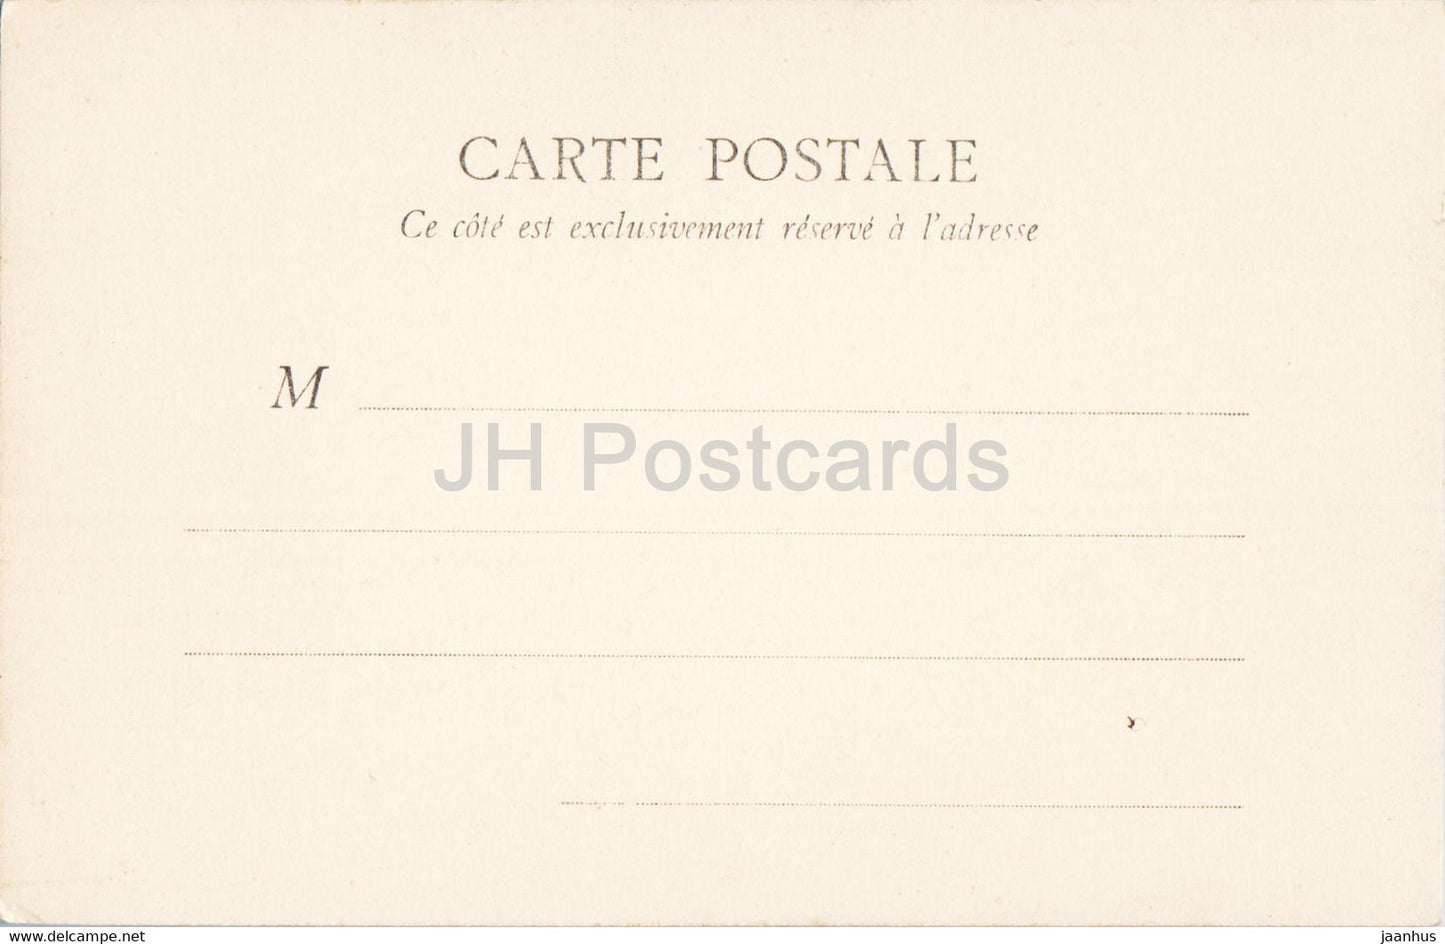 Fontainebleau - Chambre a coucher de Marie Antoinette - alte Postkarte - Frankreich - unbenutzt